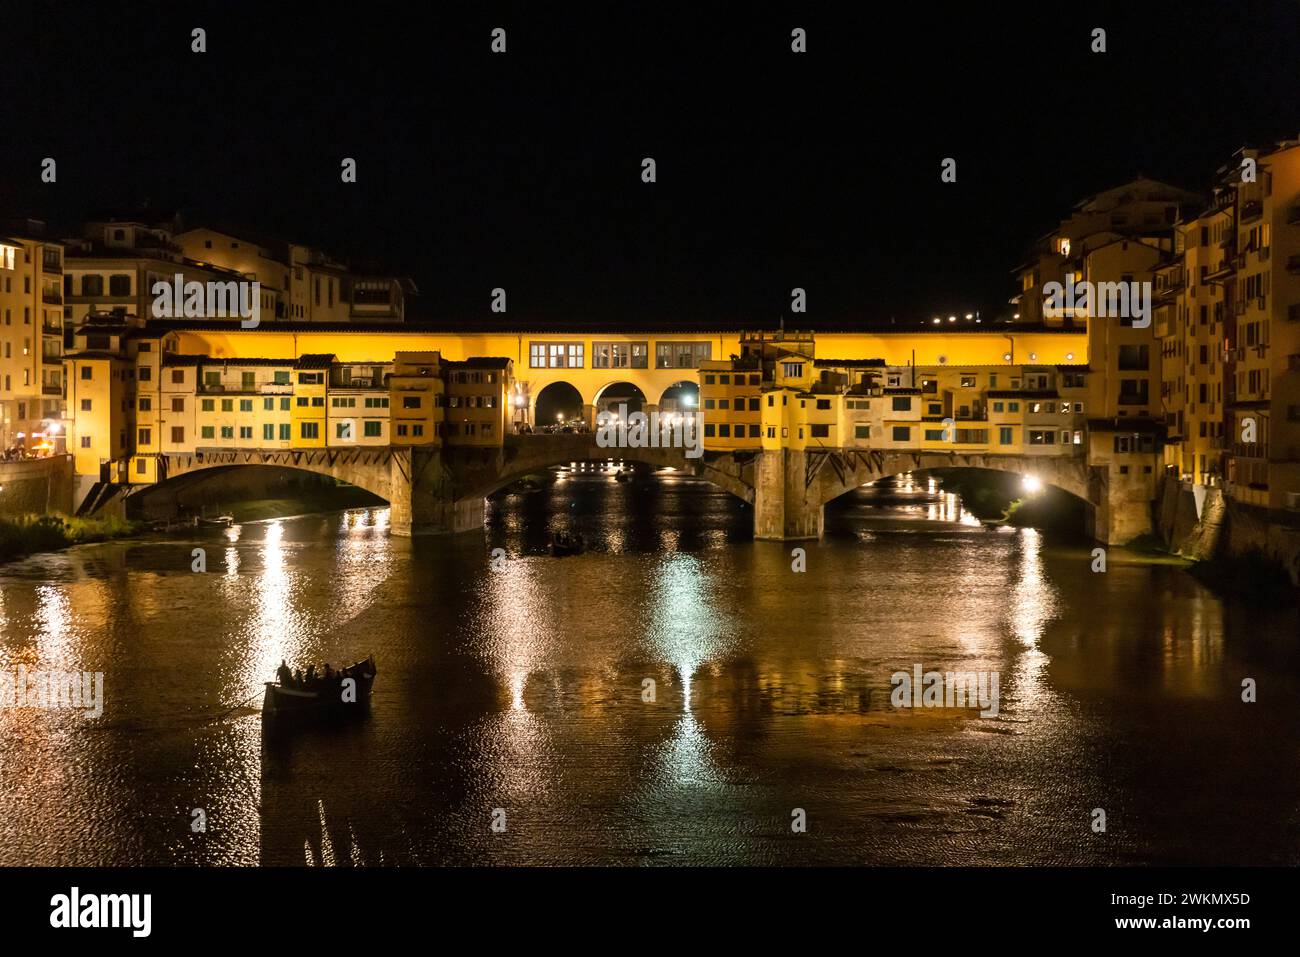 El río Arno fluye por 150 millas y es mejor conocido por el Ponte Vecchio, un magnífico puente construido en la Edad Media que se considera una arquita Foto de stock